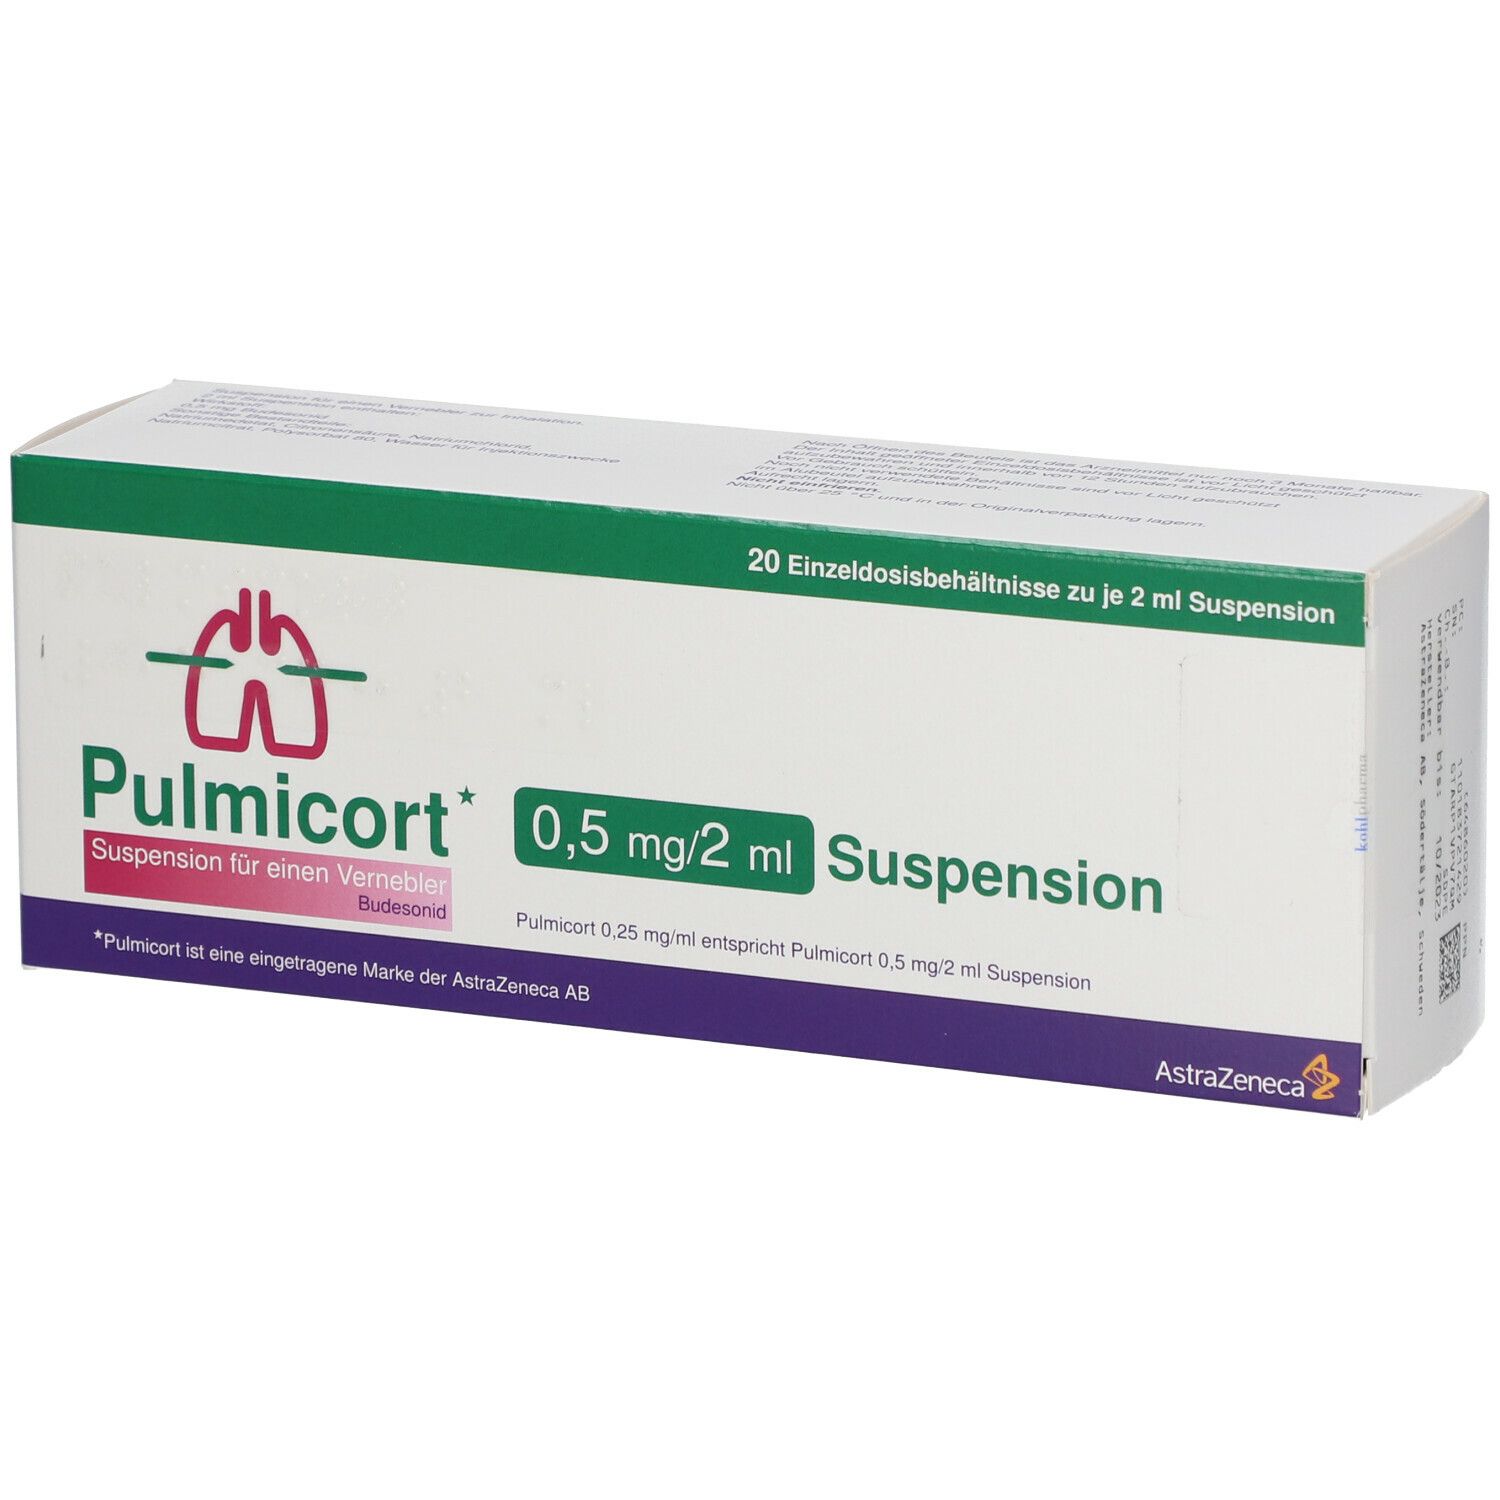 Pulmicort 0,5 mg/2 ml